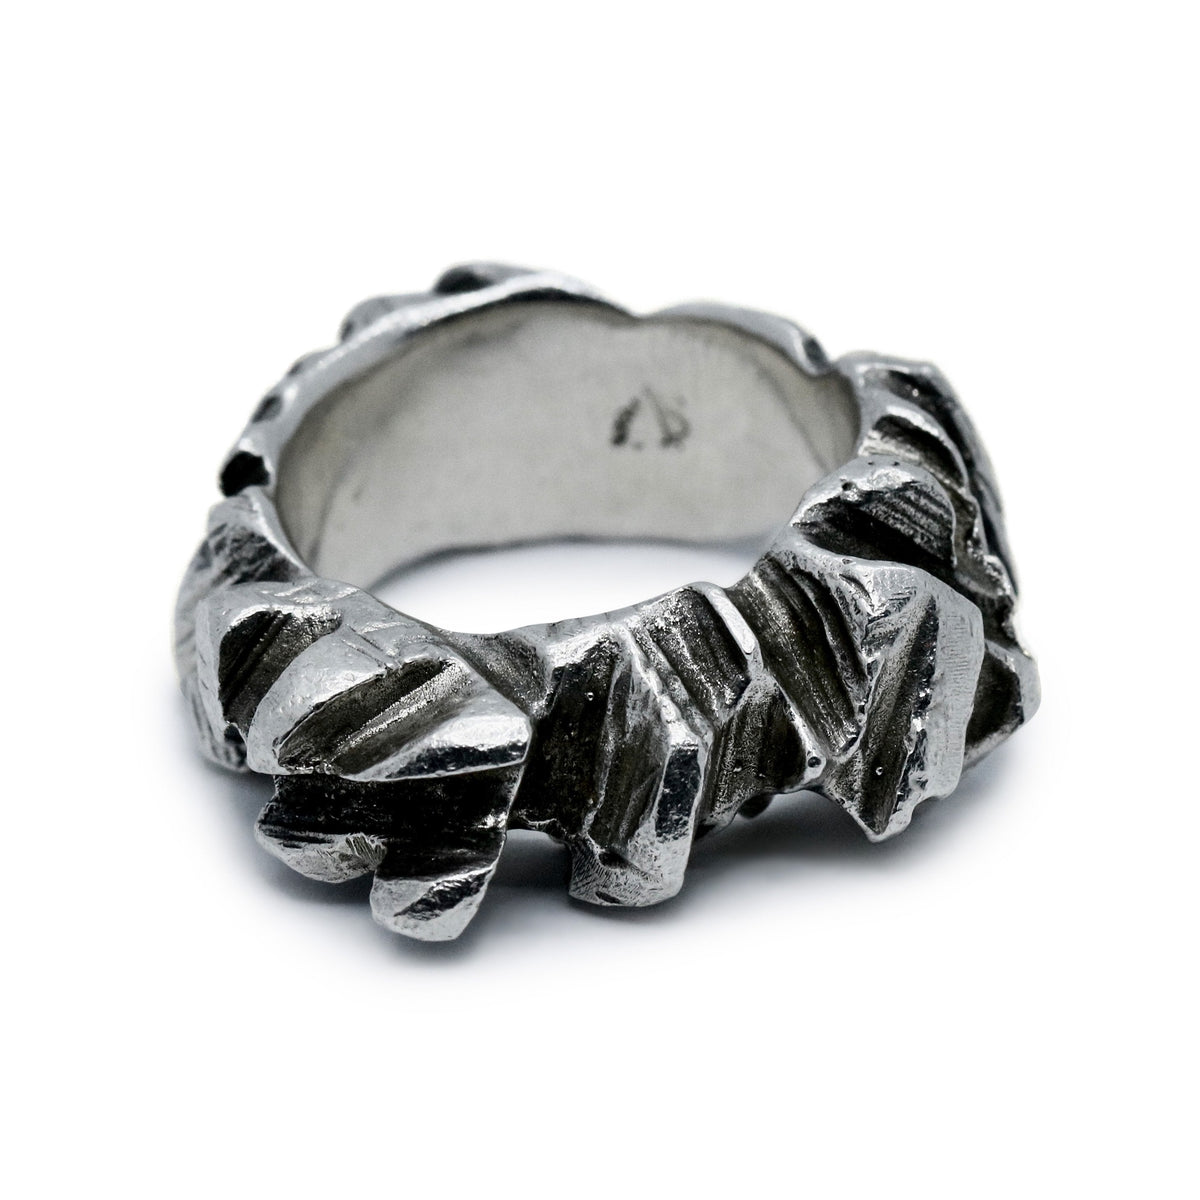 ALEX SKEFFINGTON【Liquid Metal ring】 odmalihnogu.org